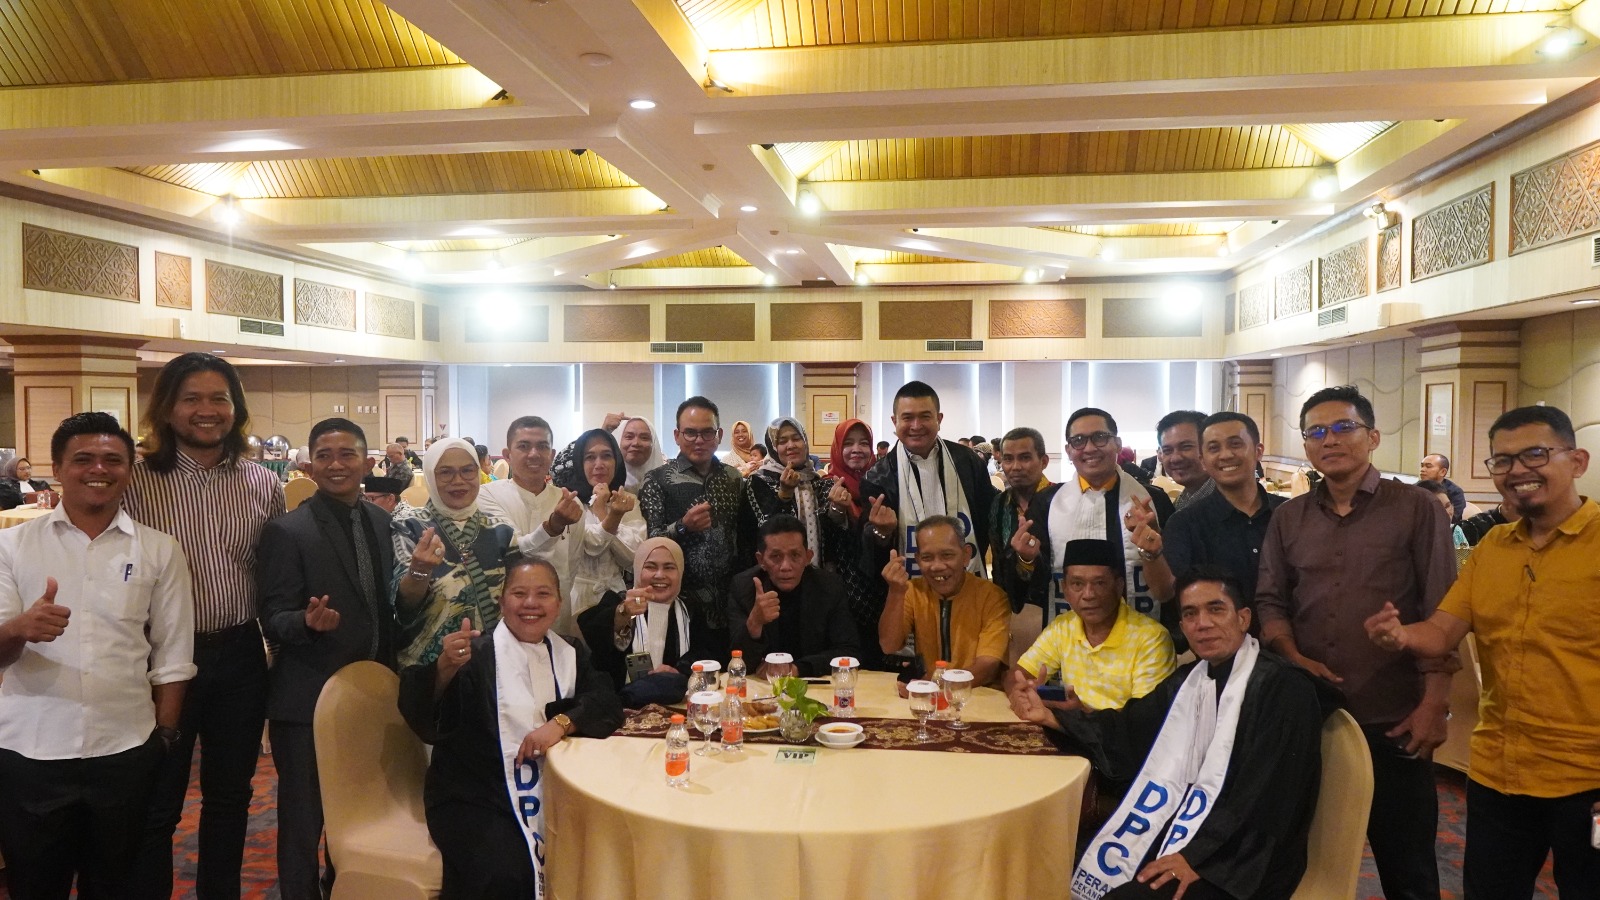 DPC PERADI SAI Pekanbaru melaksanakan pengangkatan dan pelantikan Advokat, pada tanggal 20 Maret 2024 di Hotel Pangeran, Pekanbaru. Lalu, Setelah agenda Pengangkatan dan Pelantikan, kegiatan dilanjutkan Silaturahmi dengan Berbuka puasa bersama seluruh pengurus dan Anggota DPC Pekanbaru, dan Agenda Pengambilan sumpah janji Advokat dilakukan di Pengadilan Tinggi, Riau pada 21 Maret 2024, dengan jumlah Advokat yang dilantik 15 Orang.